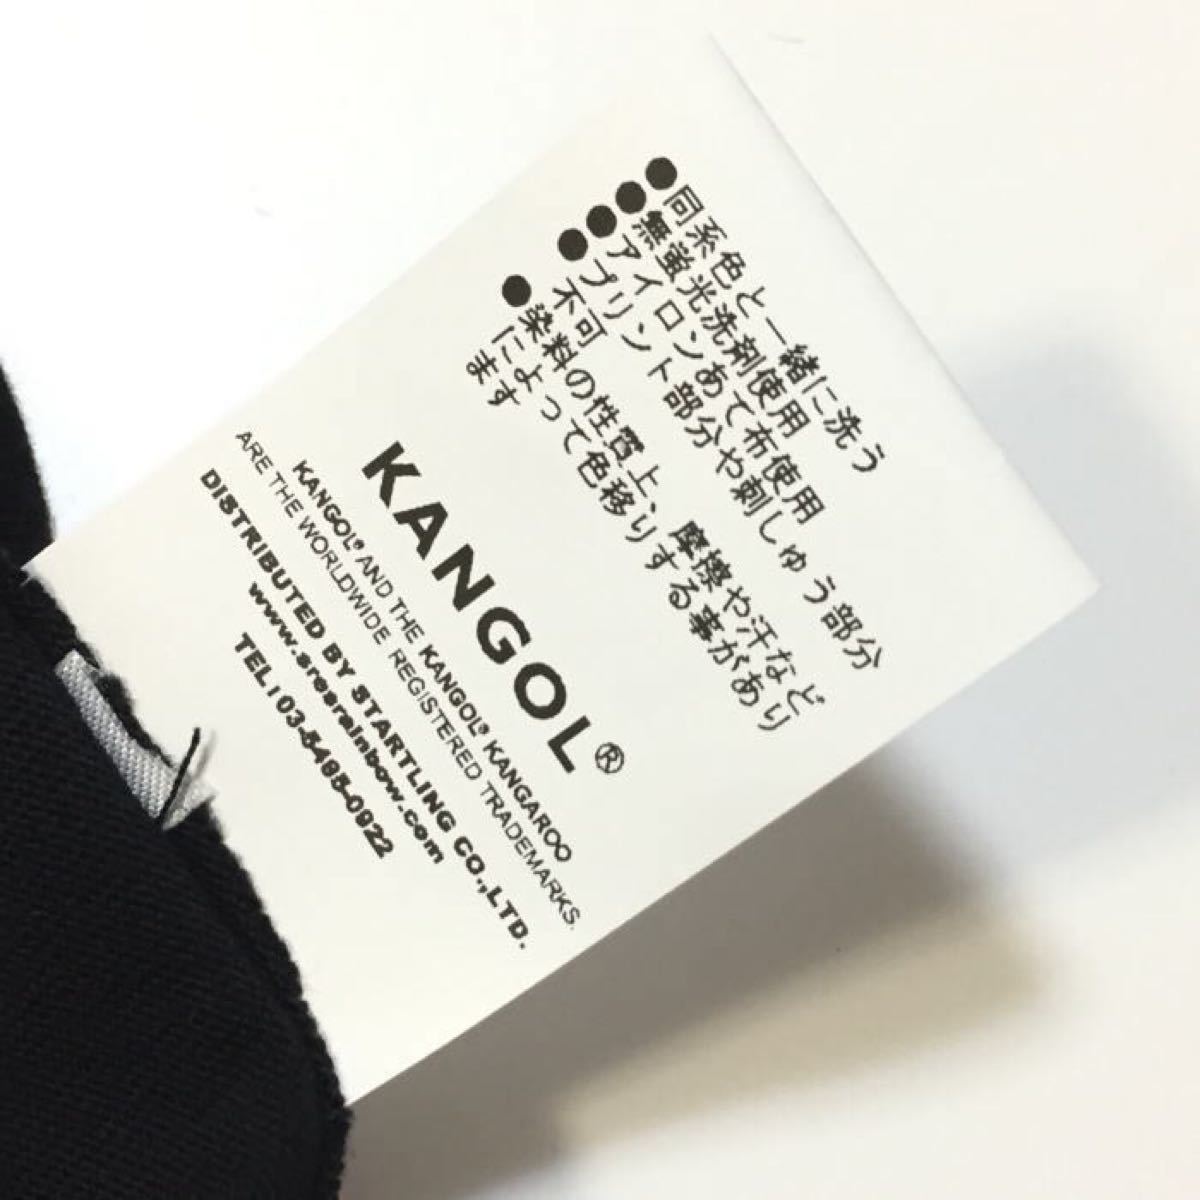 新品 正規 L KANGOL　カンゴール KANGOL HYPE オールドスクール ロゴ デザイン コラボ Ｔシャツ RUNDMC